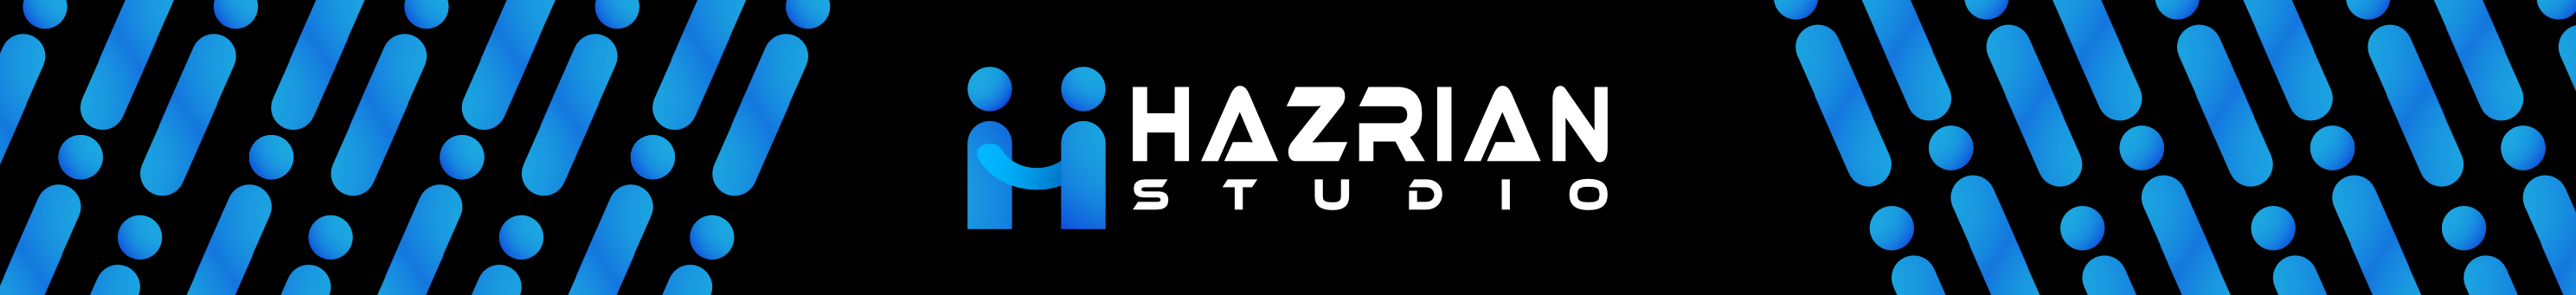 Banner de perfil de Hazrian Studio